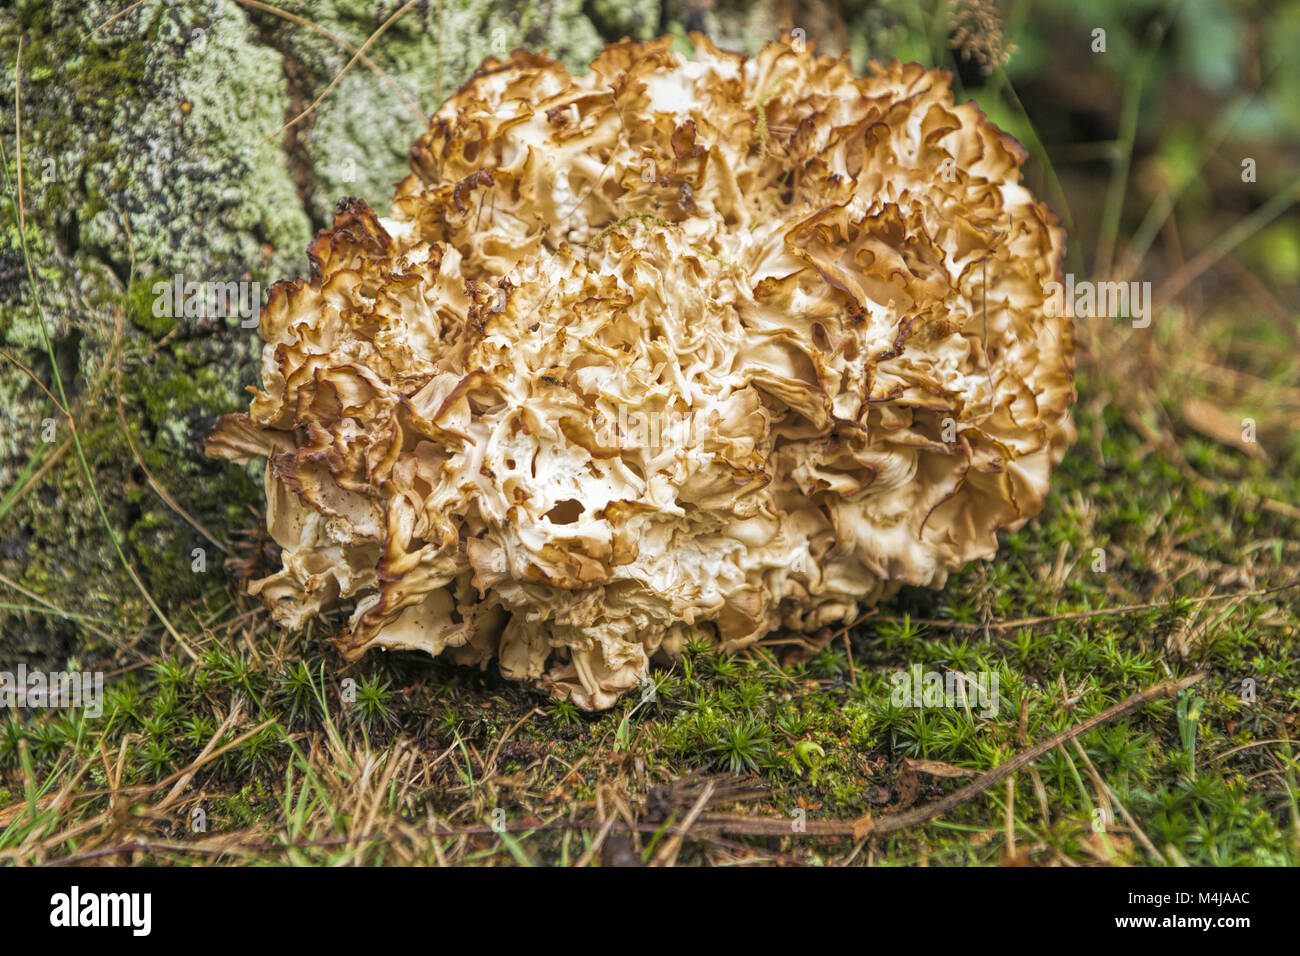 Cauliflower Mushroom Stock Photo